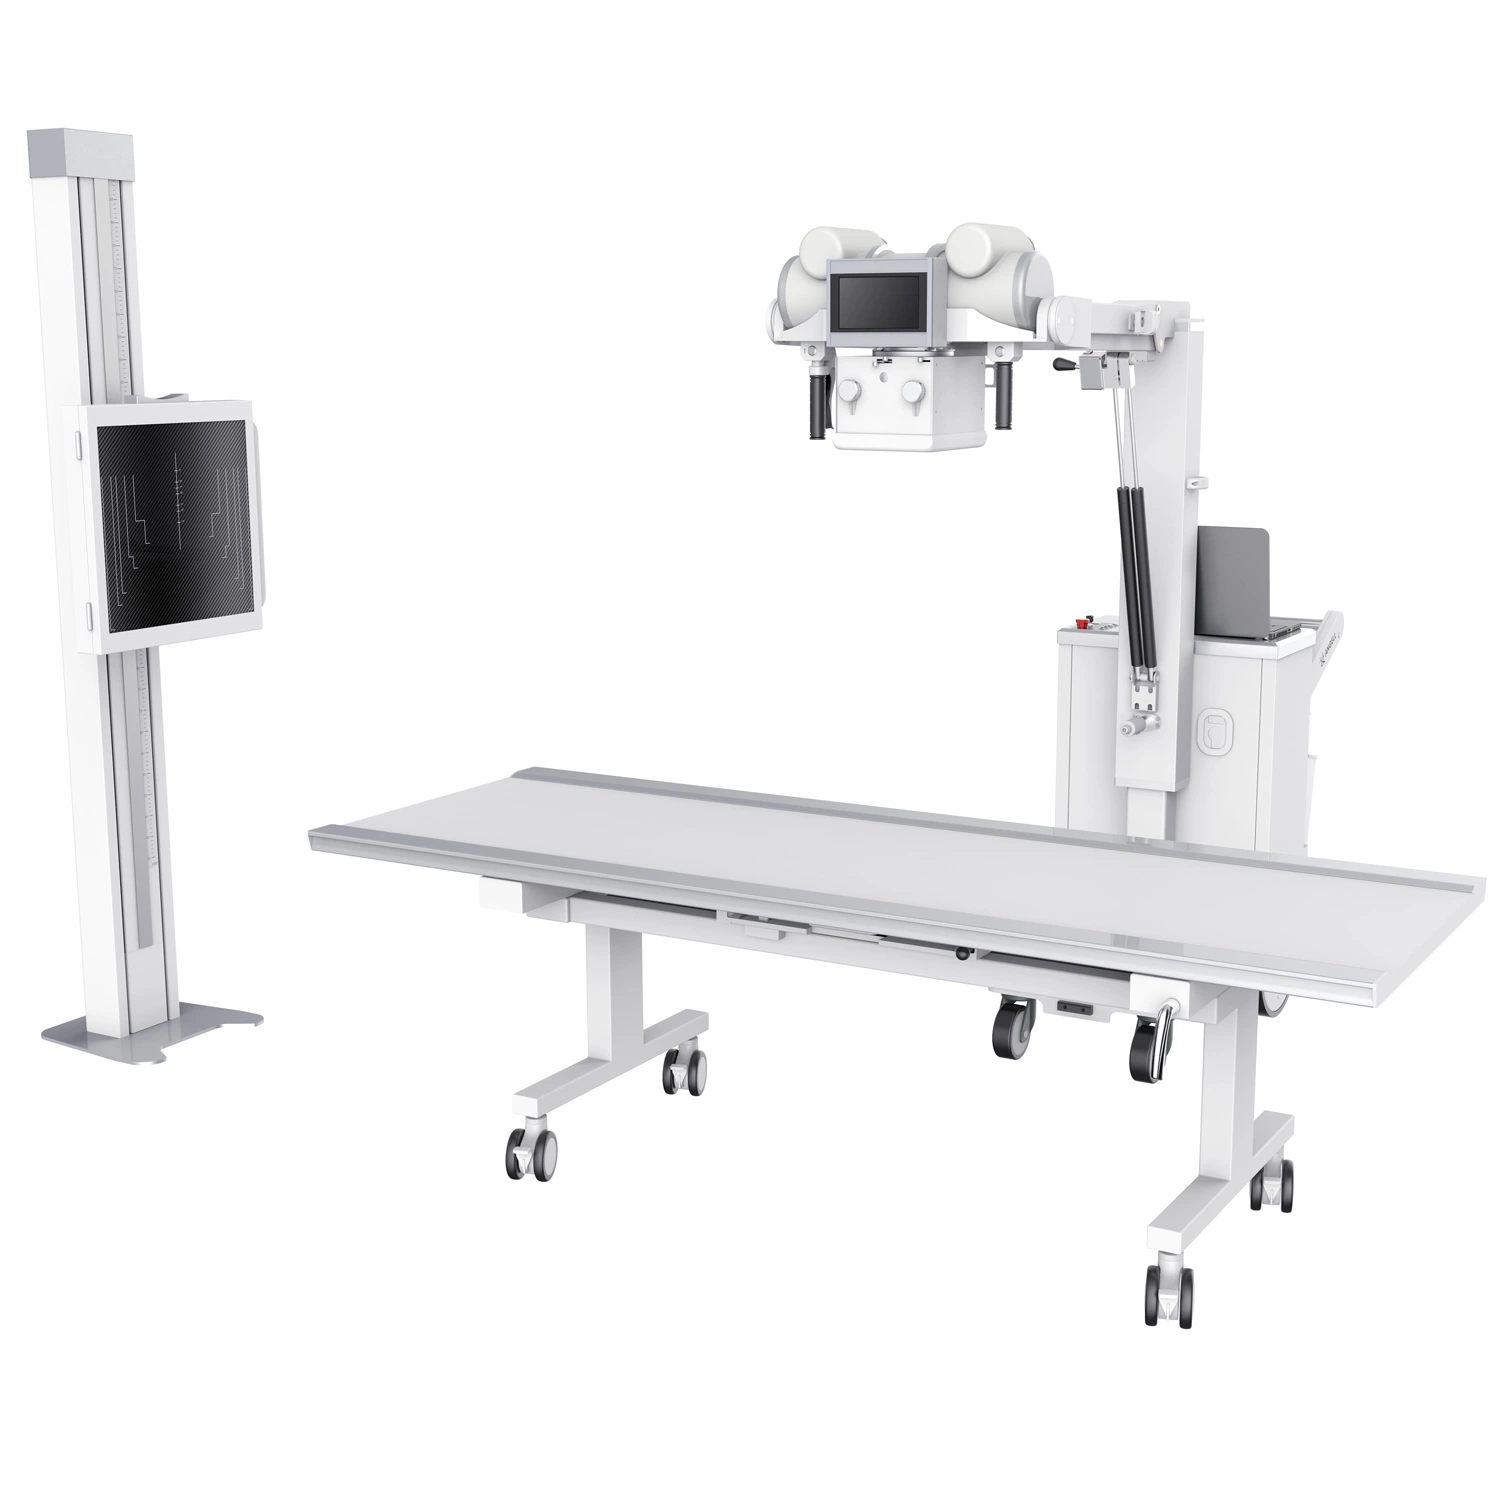 Sistema de raios X Digital Radiografia Digital aparelho de diagnóstico médico Foinoe Digital Portátil Câmara X Ray Mobile Dr